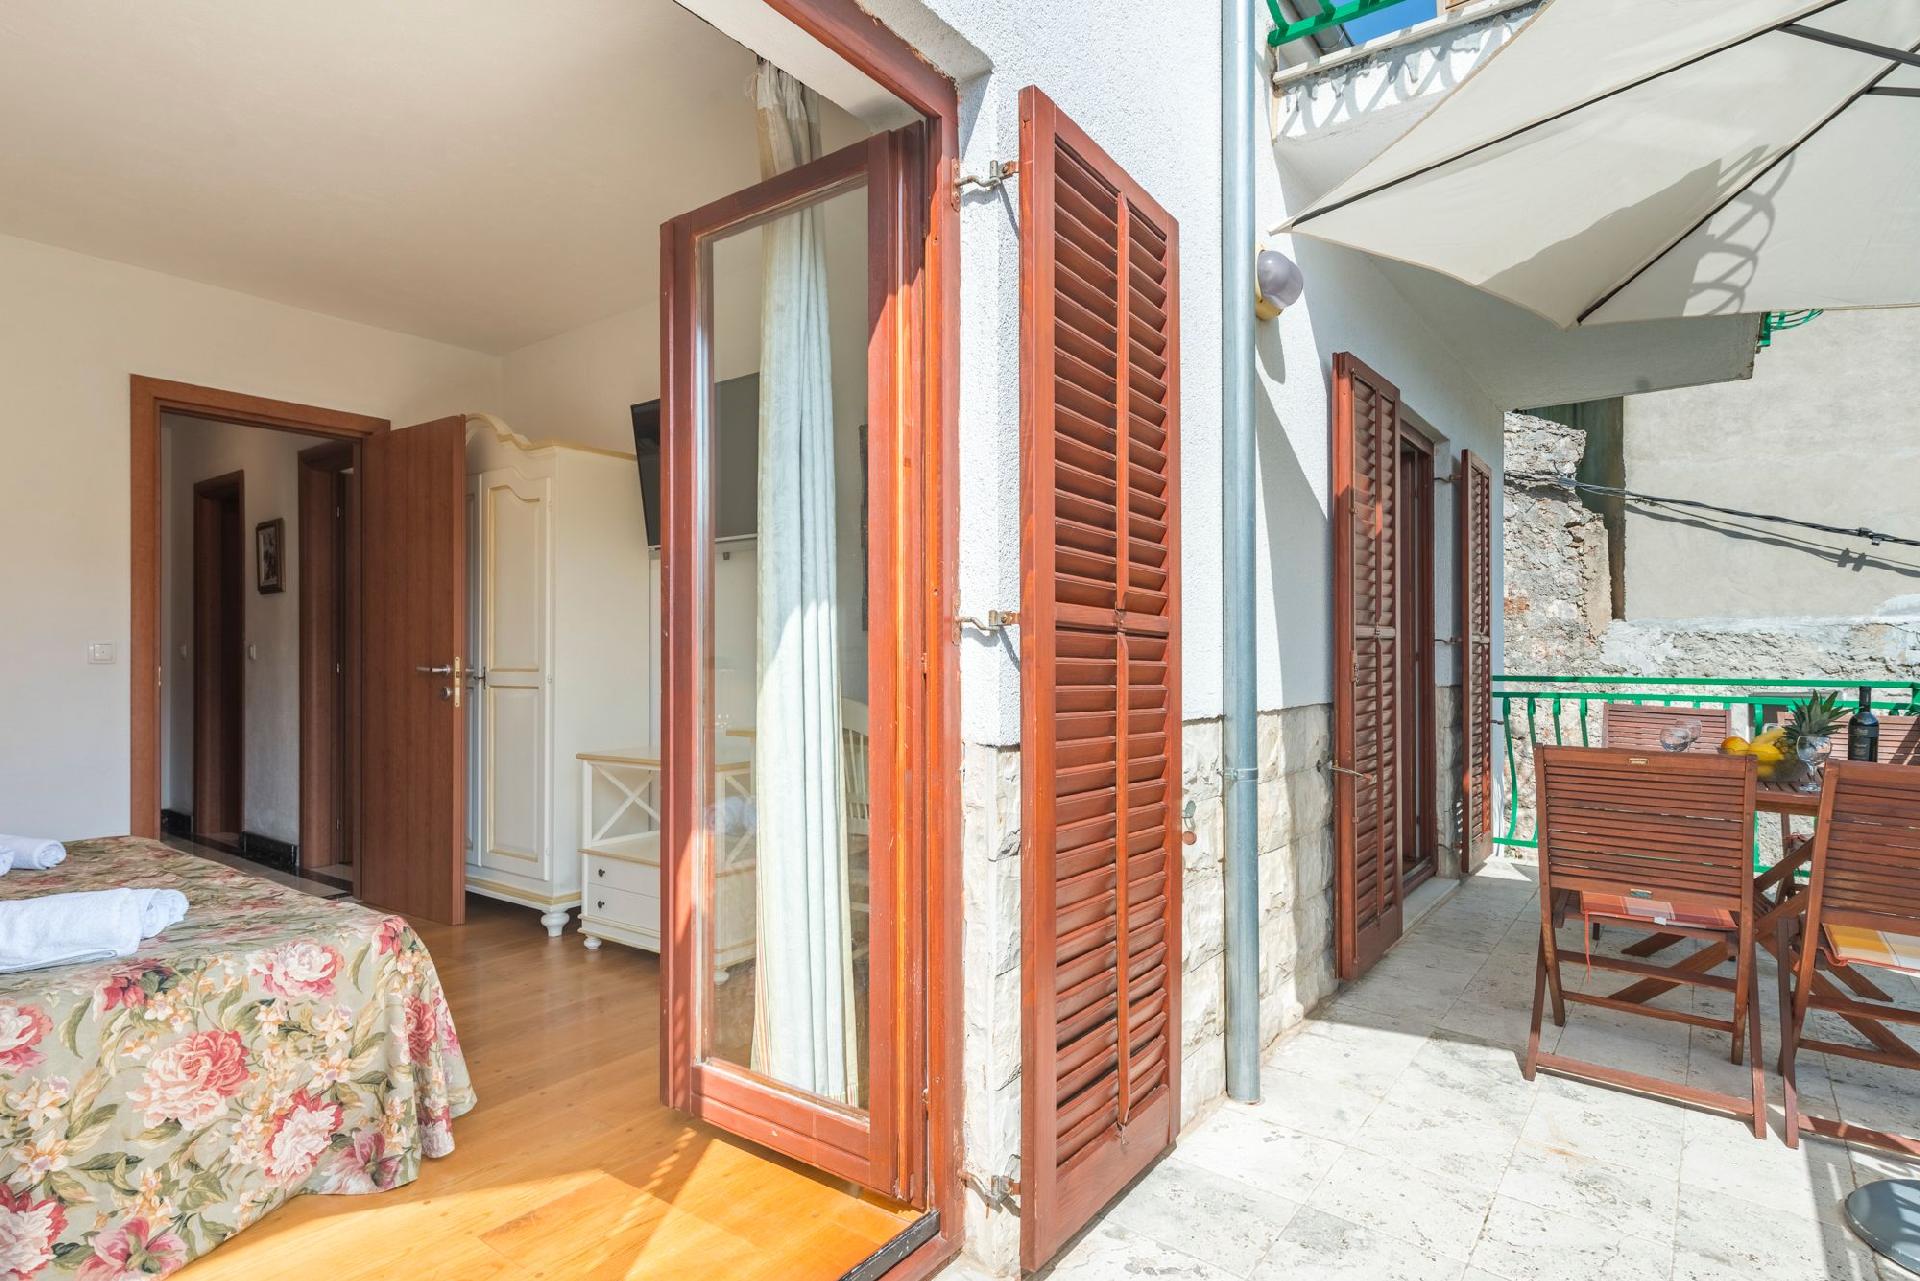 Ferienwohnung für 4 Personen ca. 55 m² i Ferienwohnung  kroatische Inseln